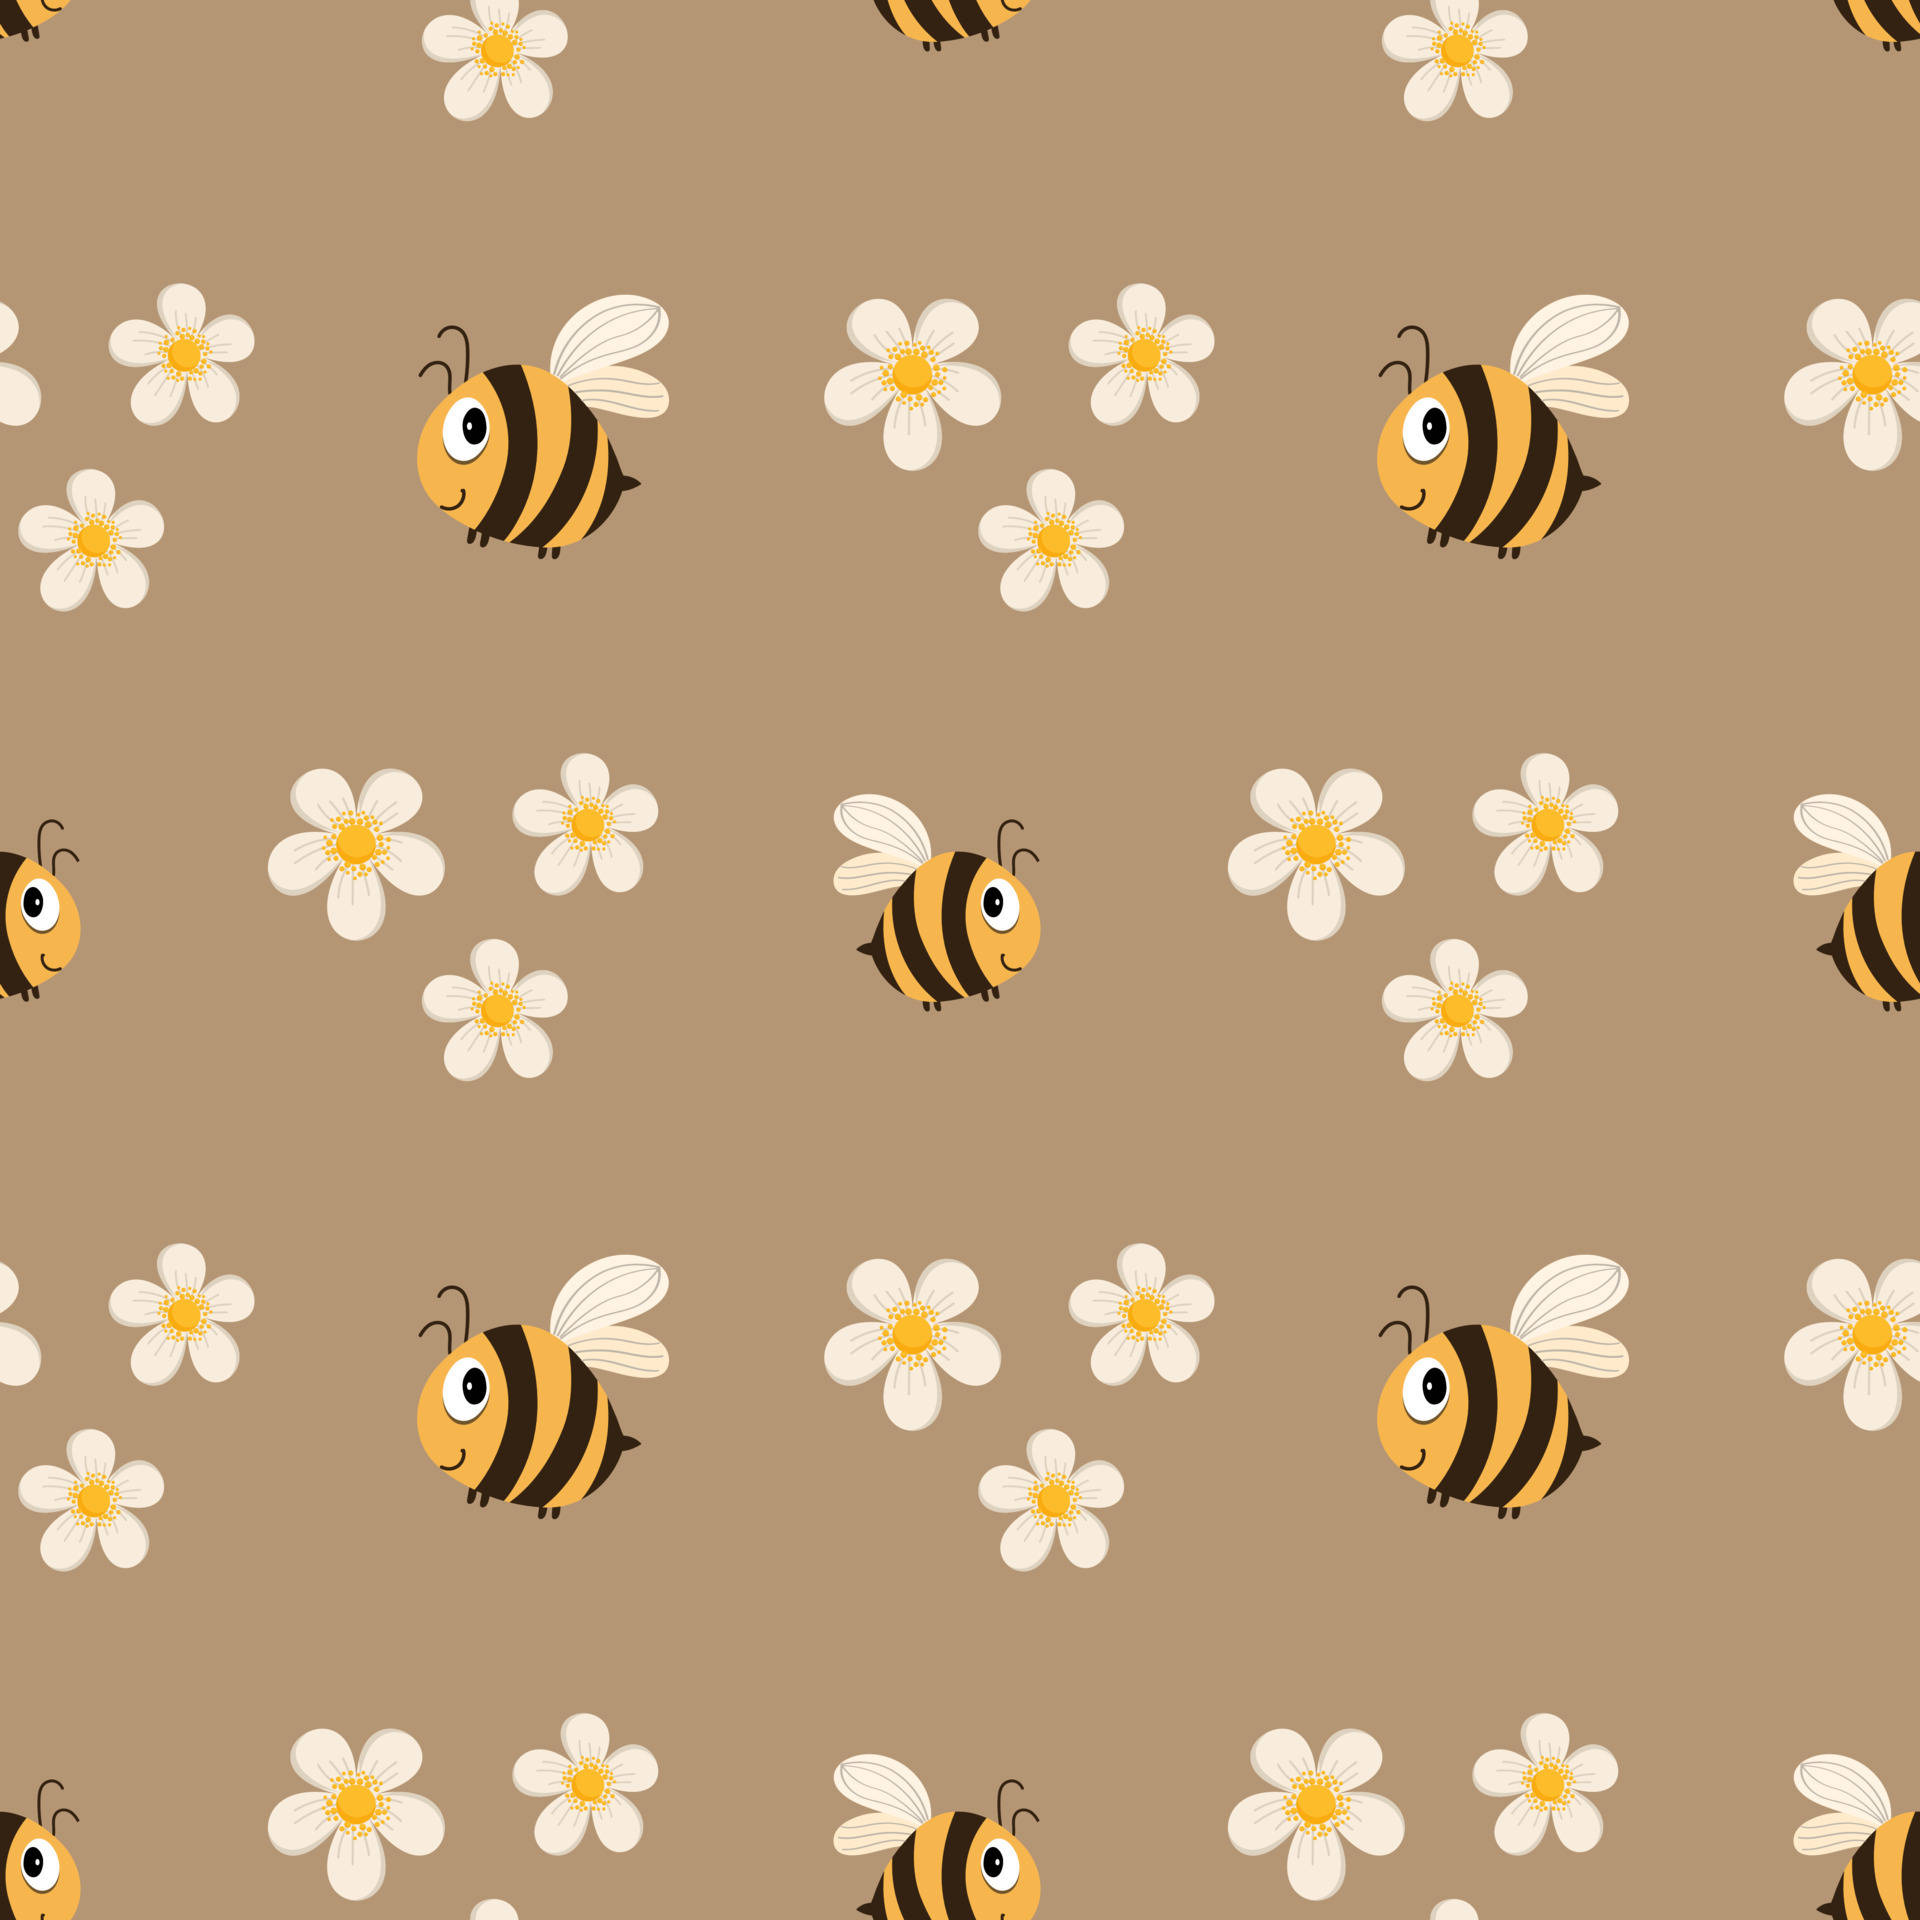 Bees Wandering Over Beige Background